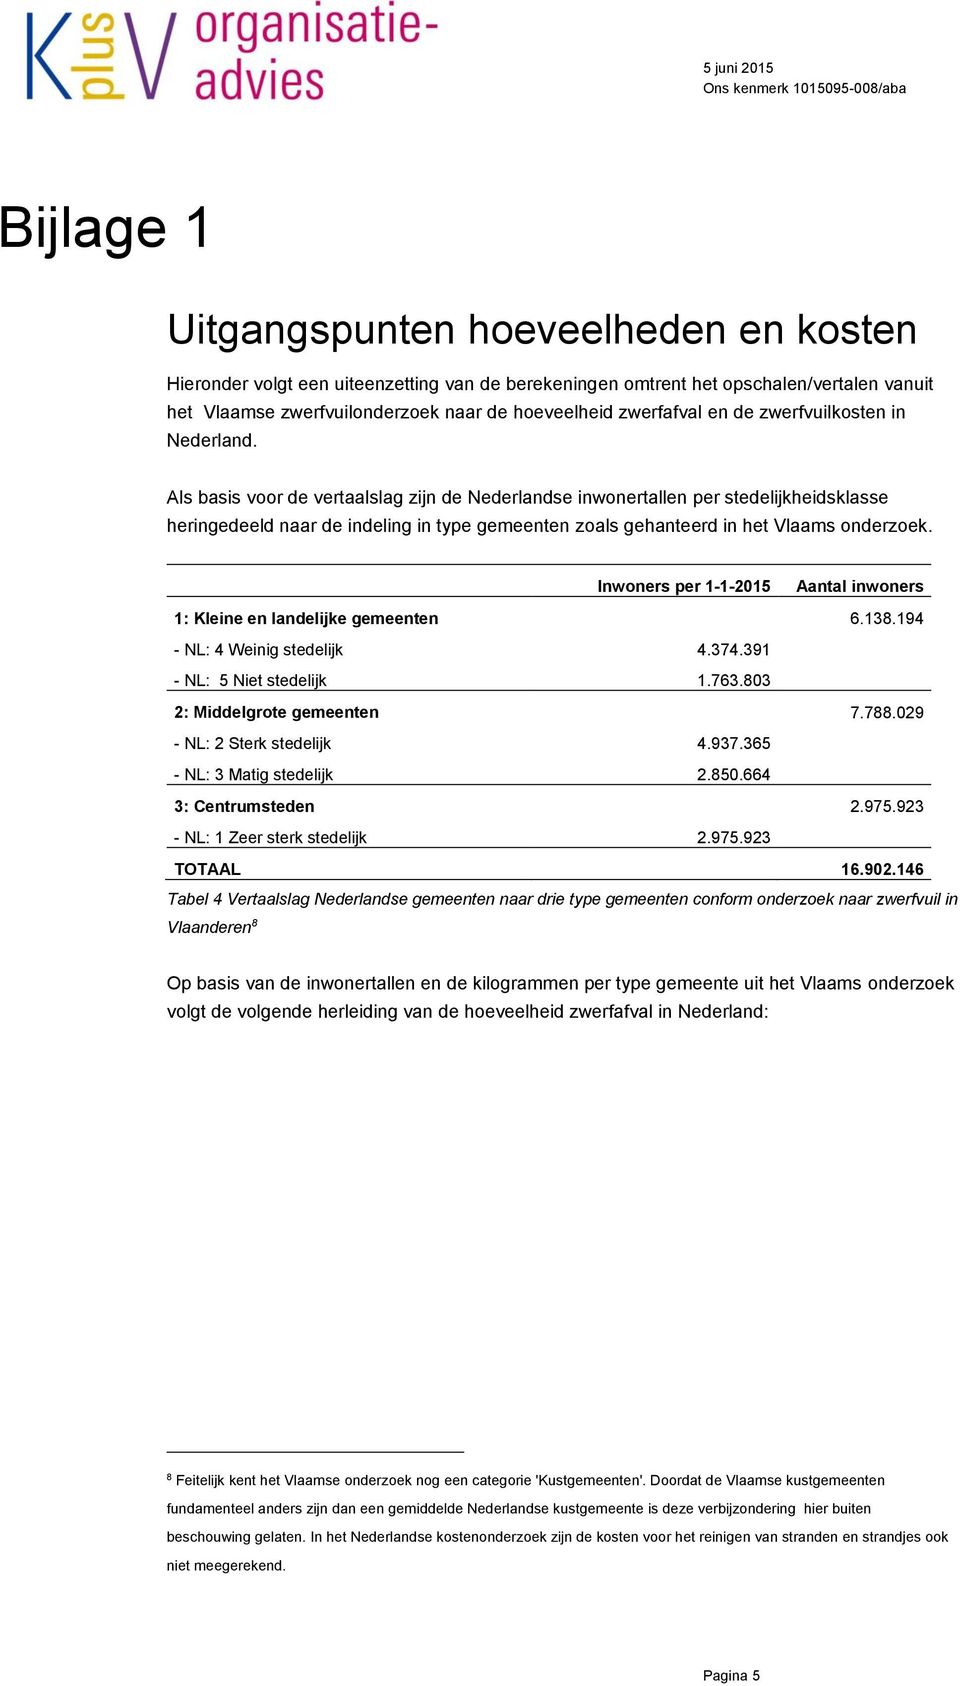 Als basis voor de vertaalslag zijn de Nederlandse inwonertallen per stedelijkheidsklasse heringedeeld naar de indeling in type gemeenten zoals gehanteerd in het Vlaams onderzoek.